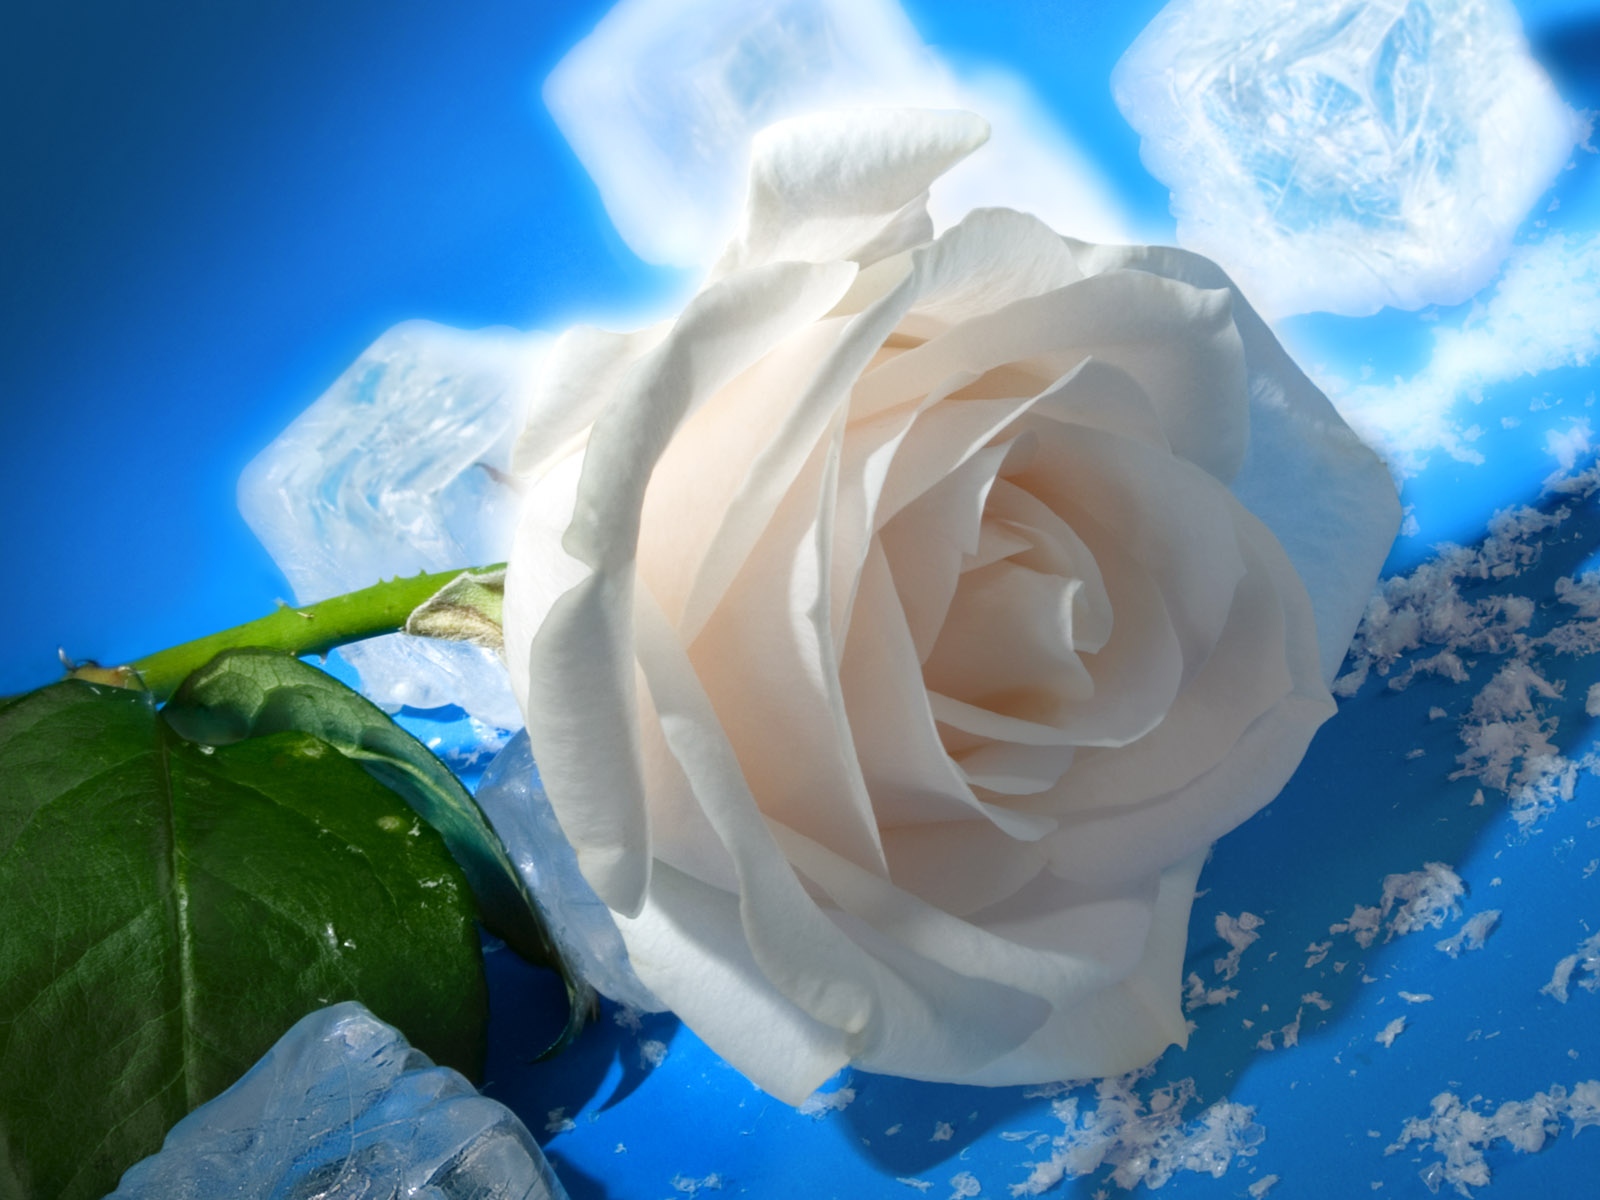 real flower wallpaper,flower,rose,petal,white,garden roses